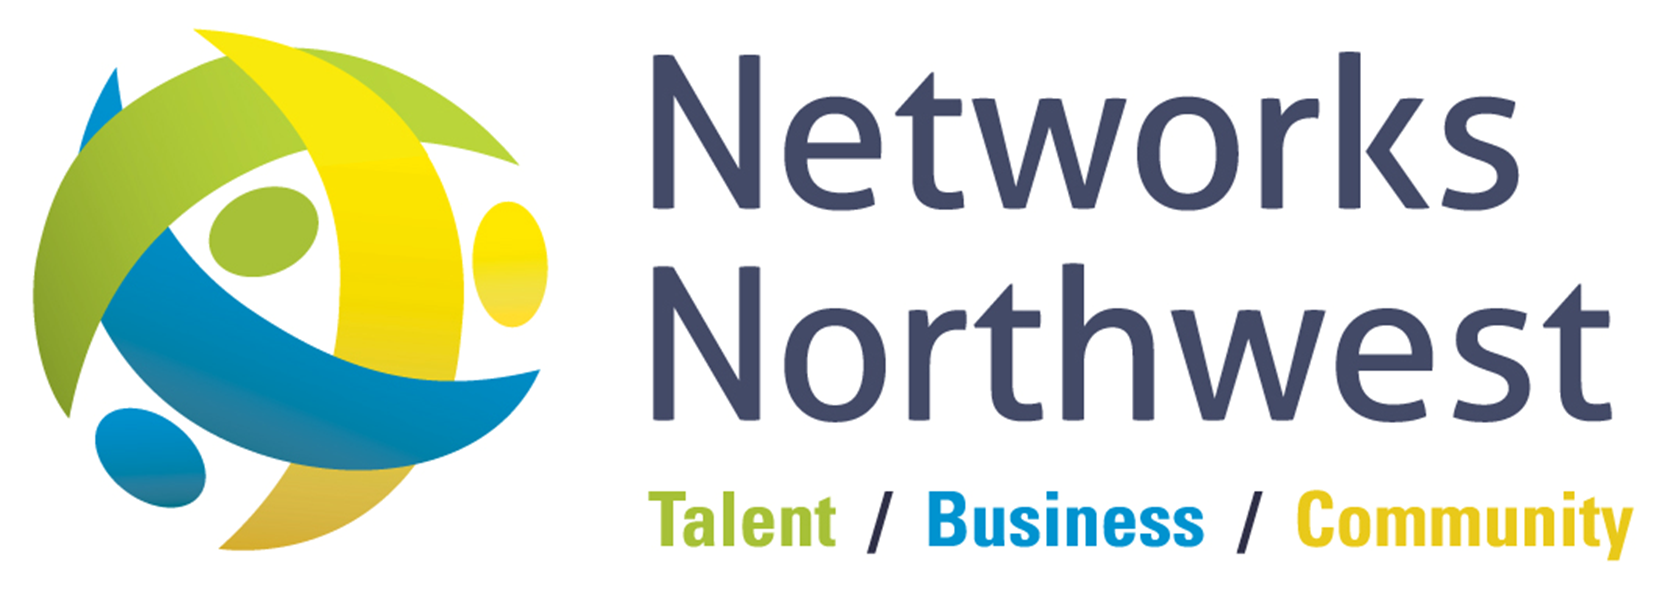 Networks Northwest Logo (1).png